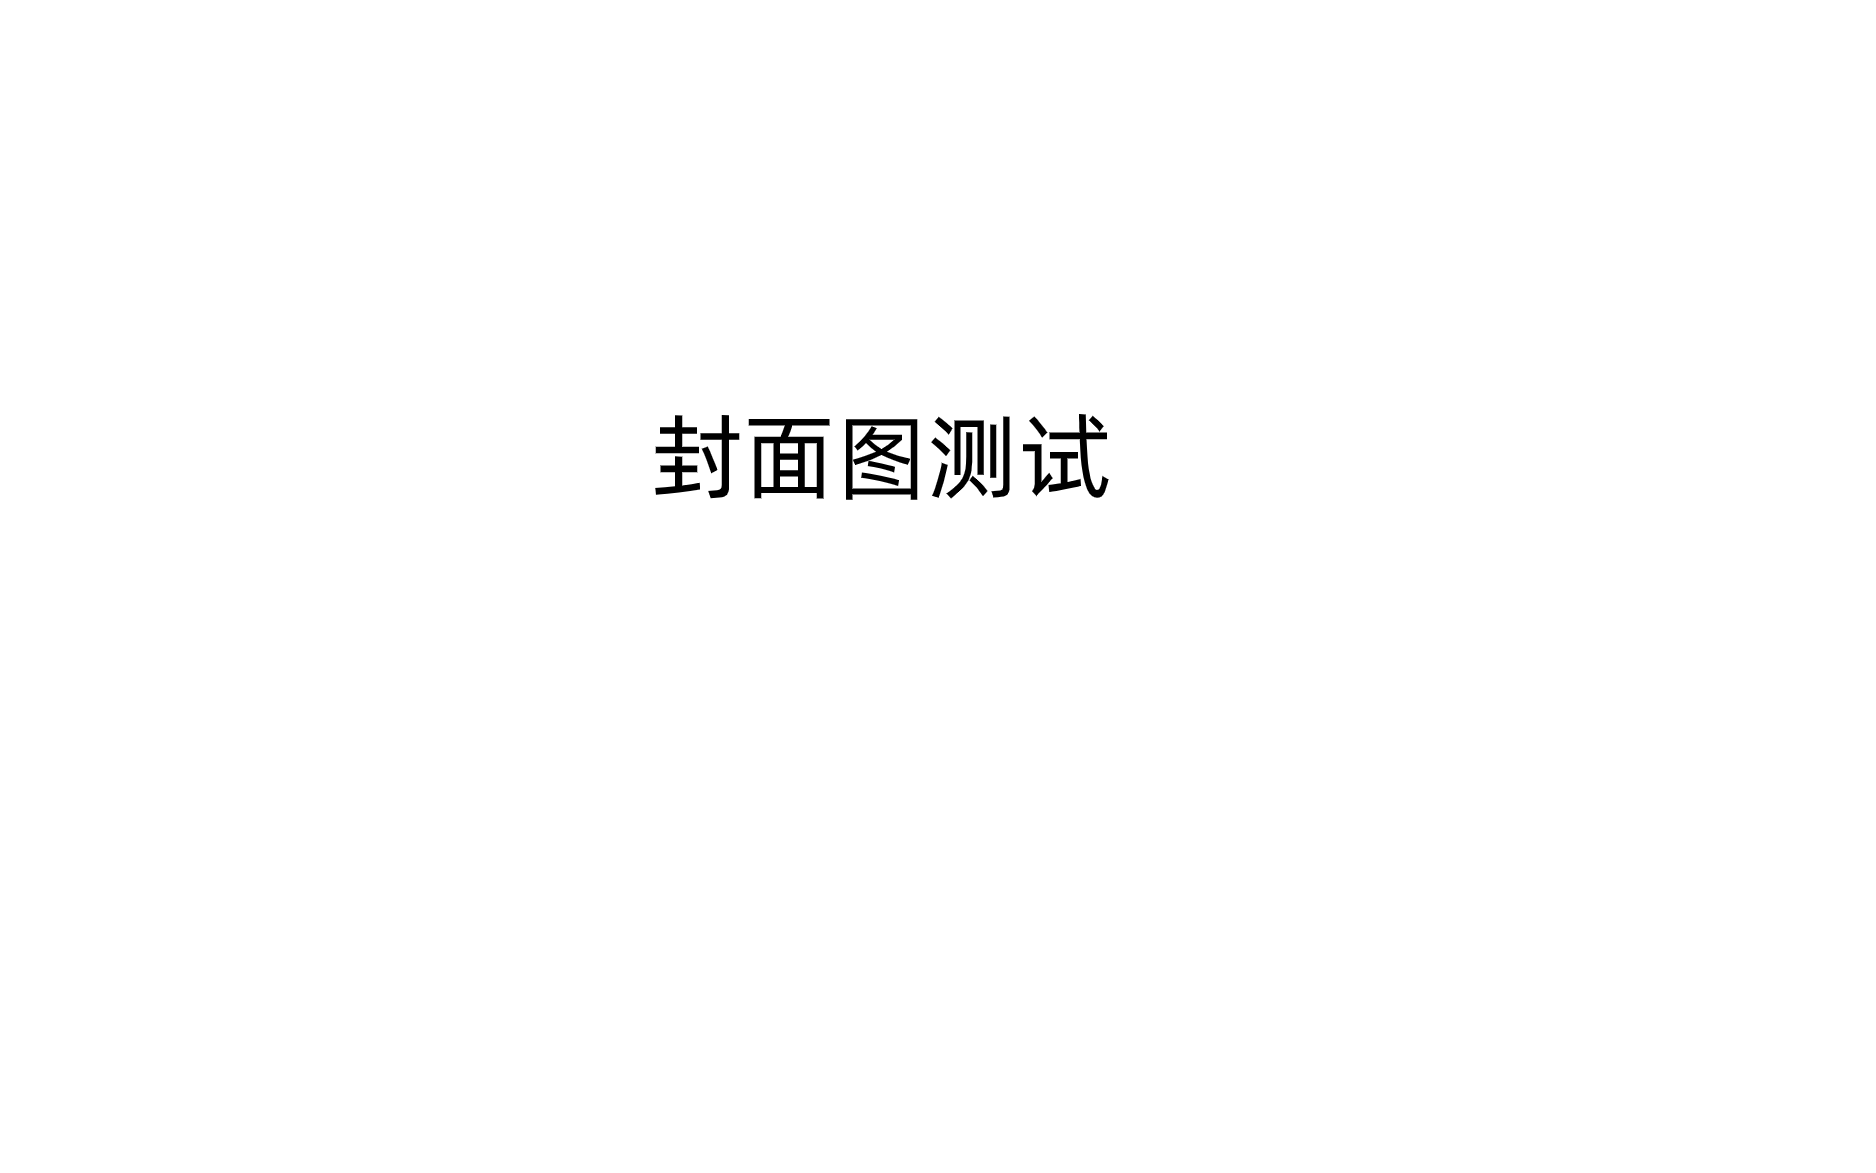 10ml林清轩38不到可捎12ml安热沙19.9